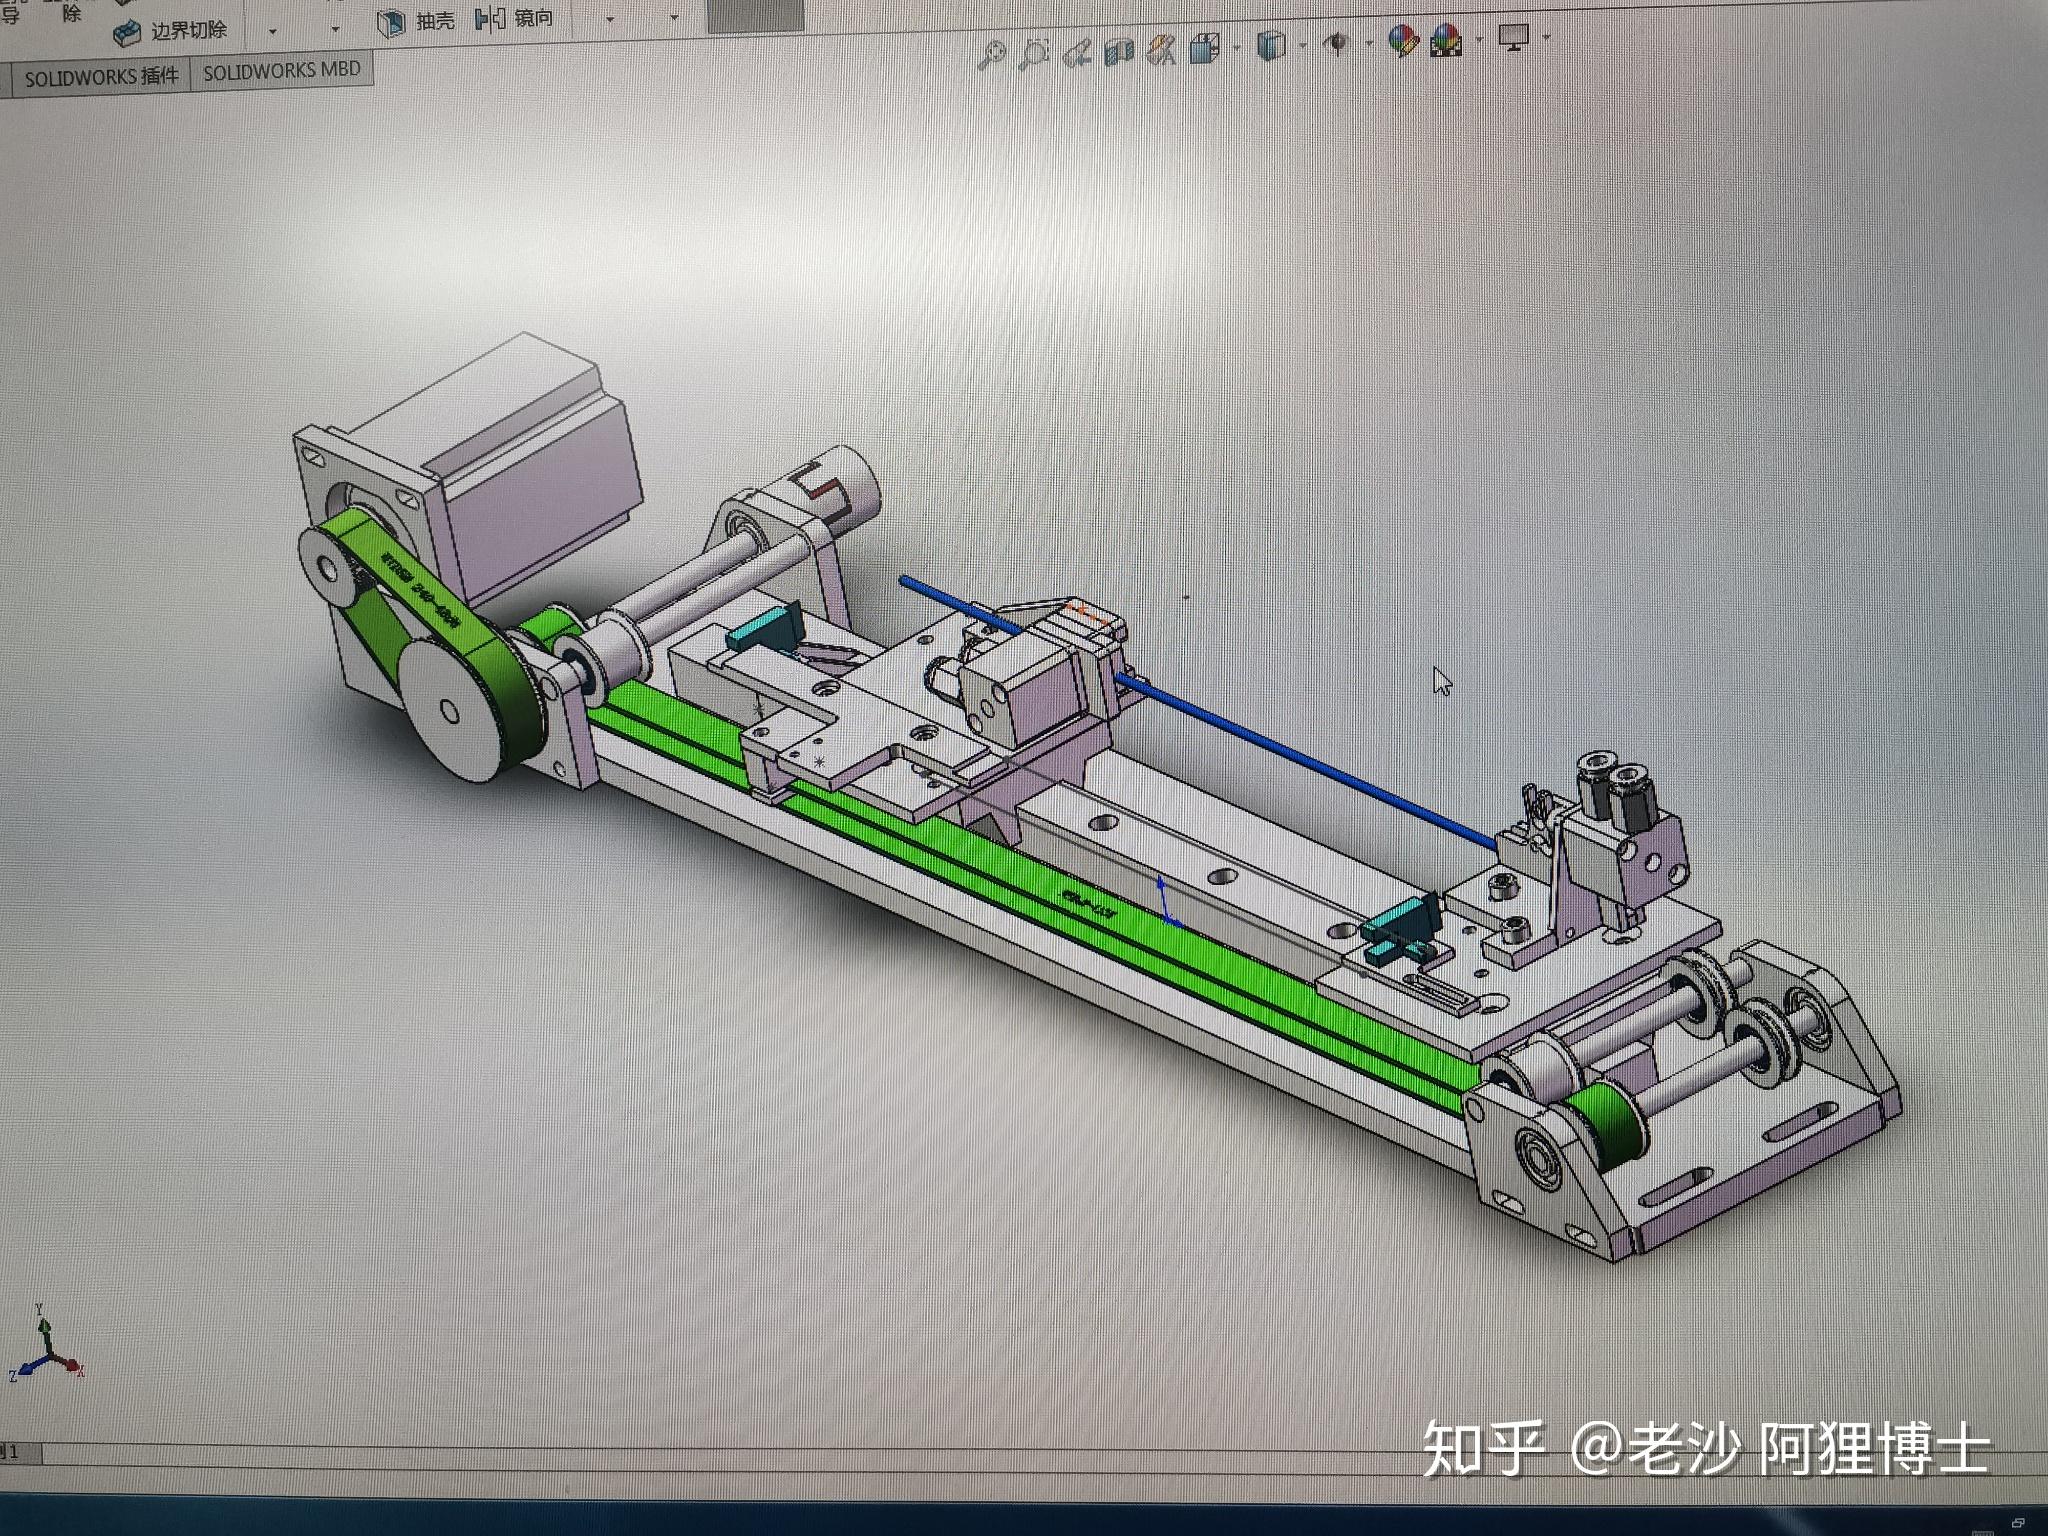 现代简约三房CAD平面施工图图片下载_红动中国